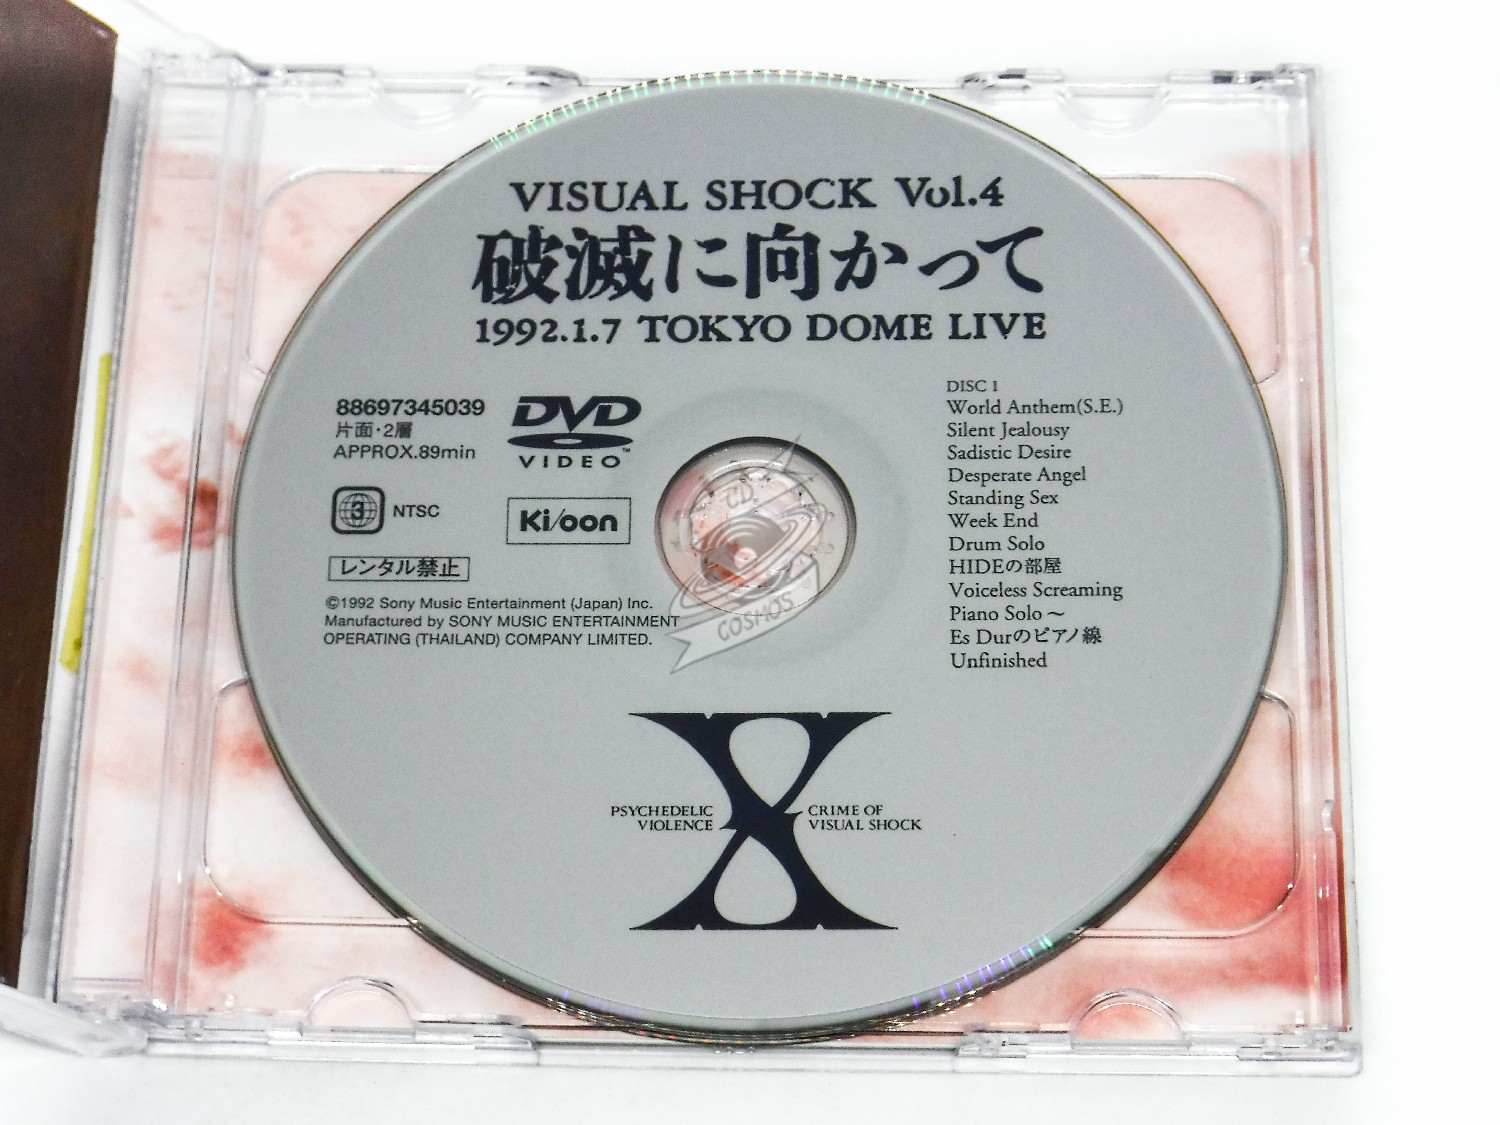 X JAPAN 破滅に向かって 1992. TOKYO DOME DVD-